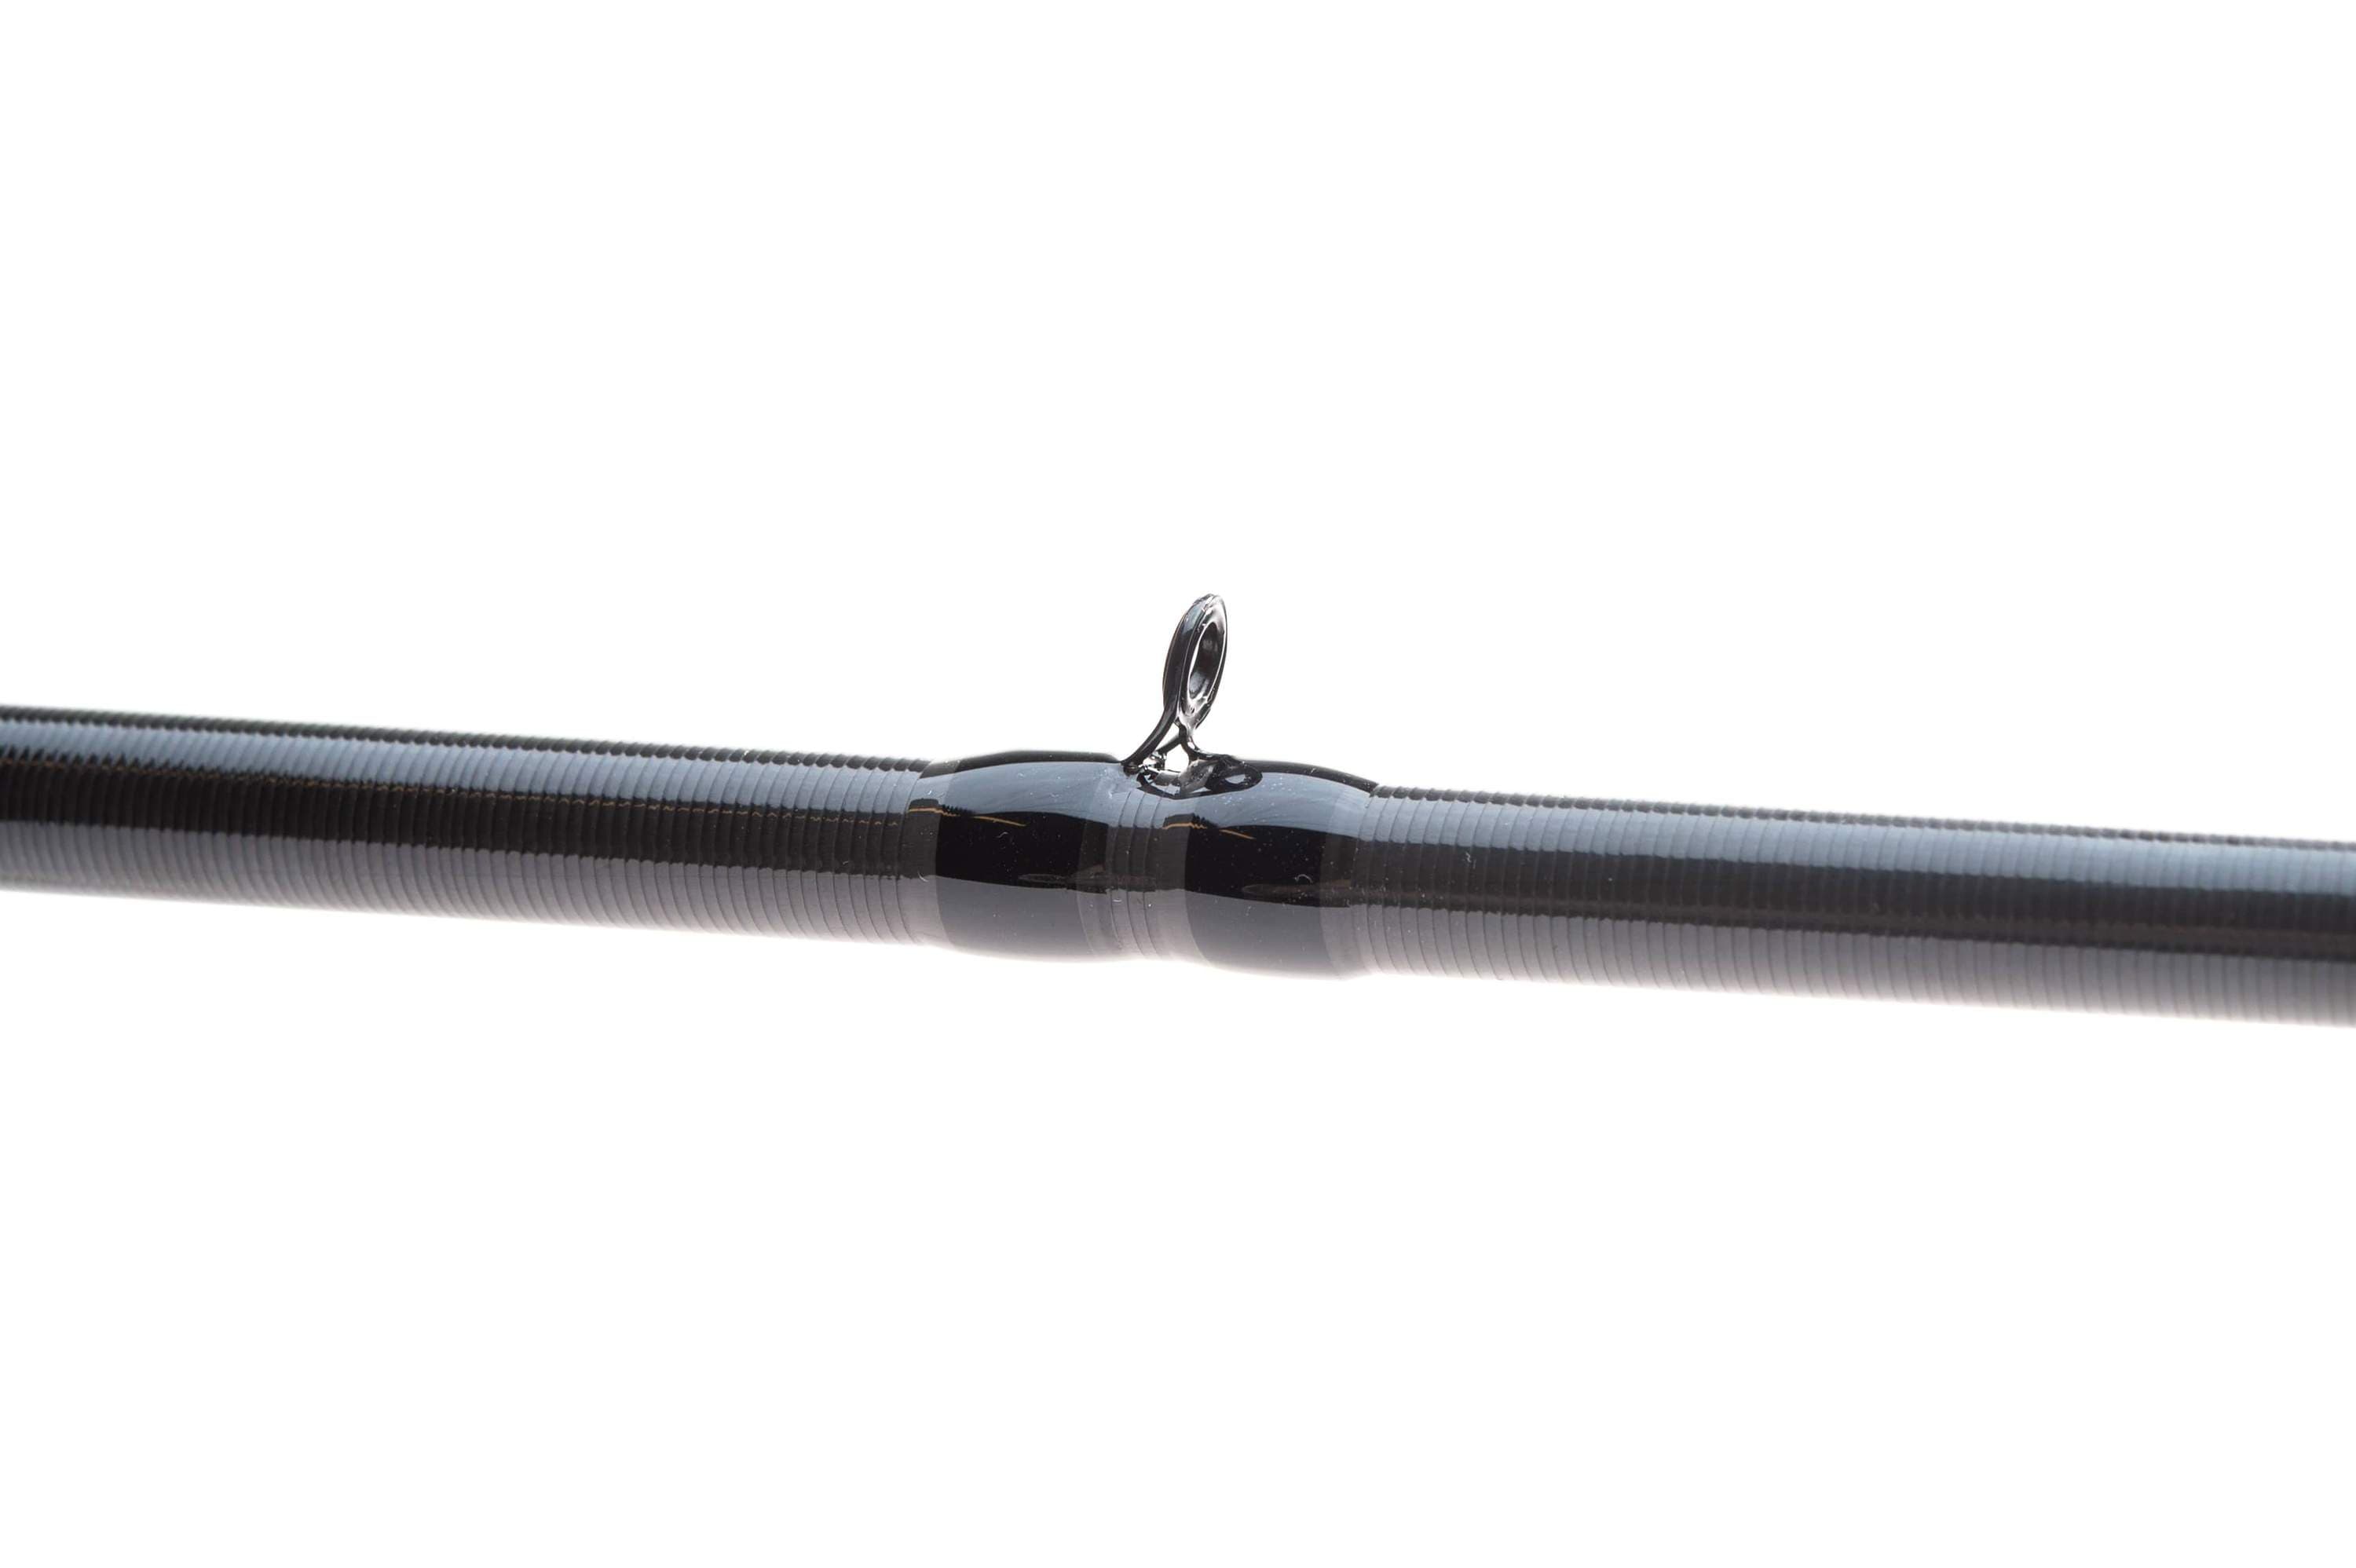 Magnesium Fishing Rod – KISTLER Fishing